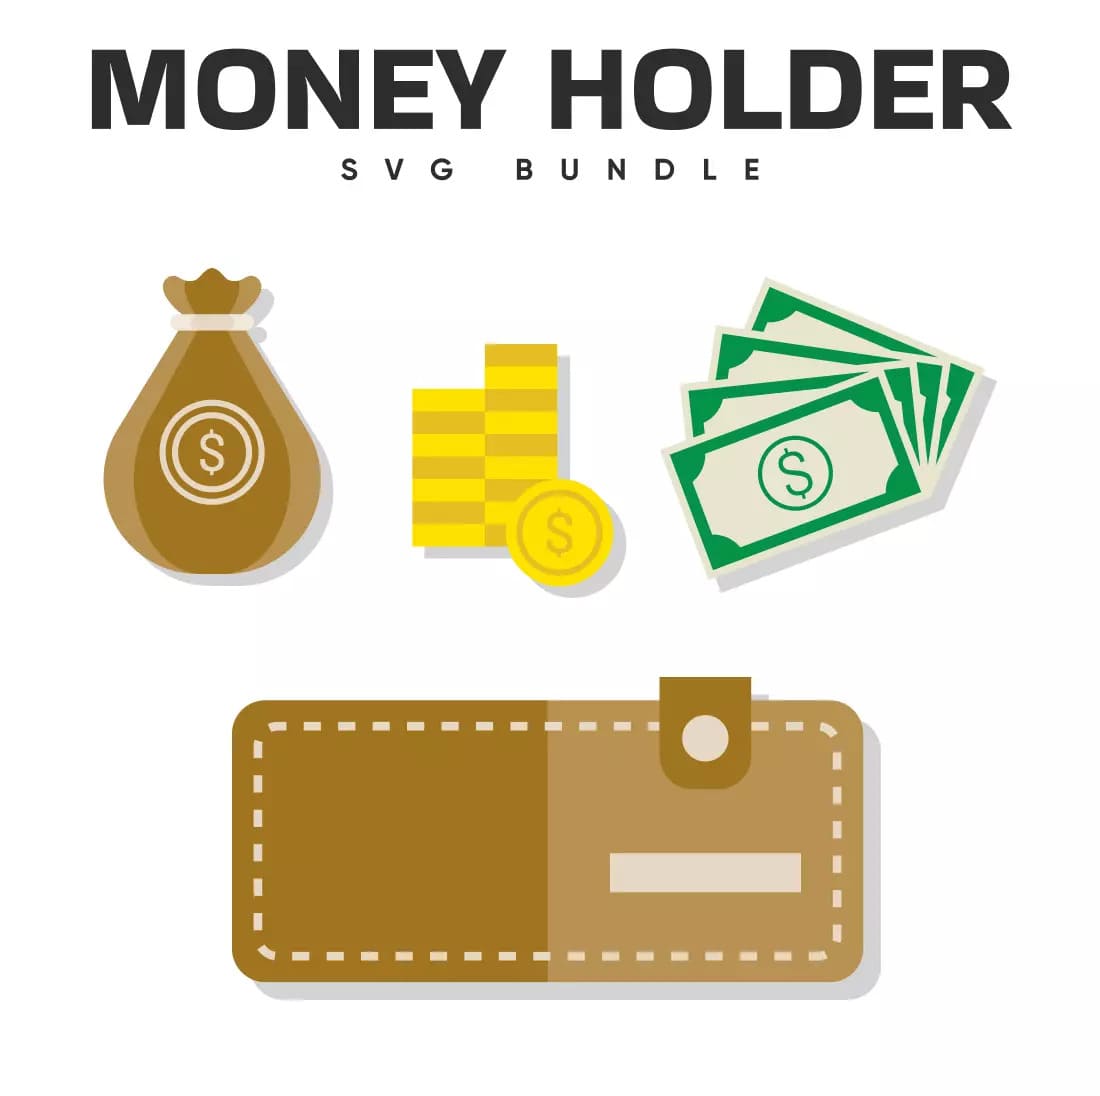 Money Holder SVG Bundle Preview.